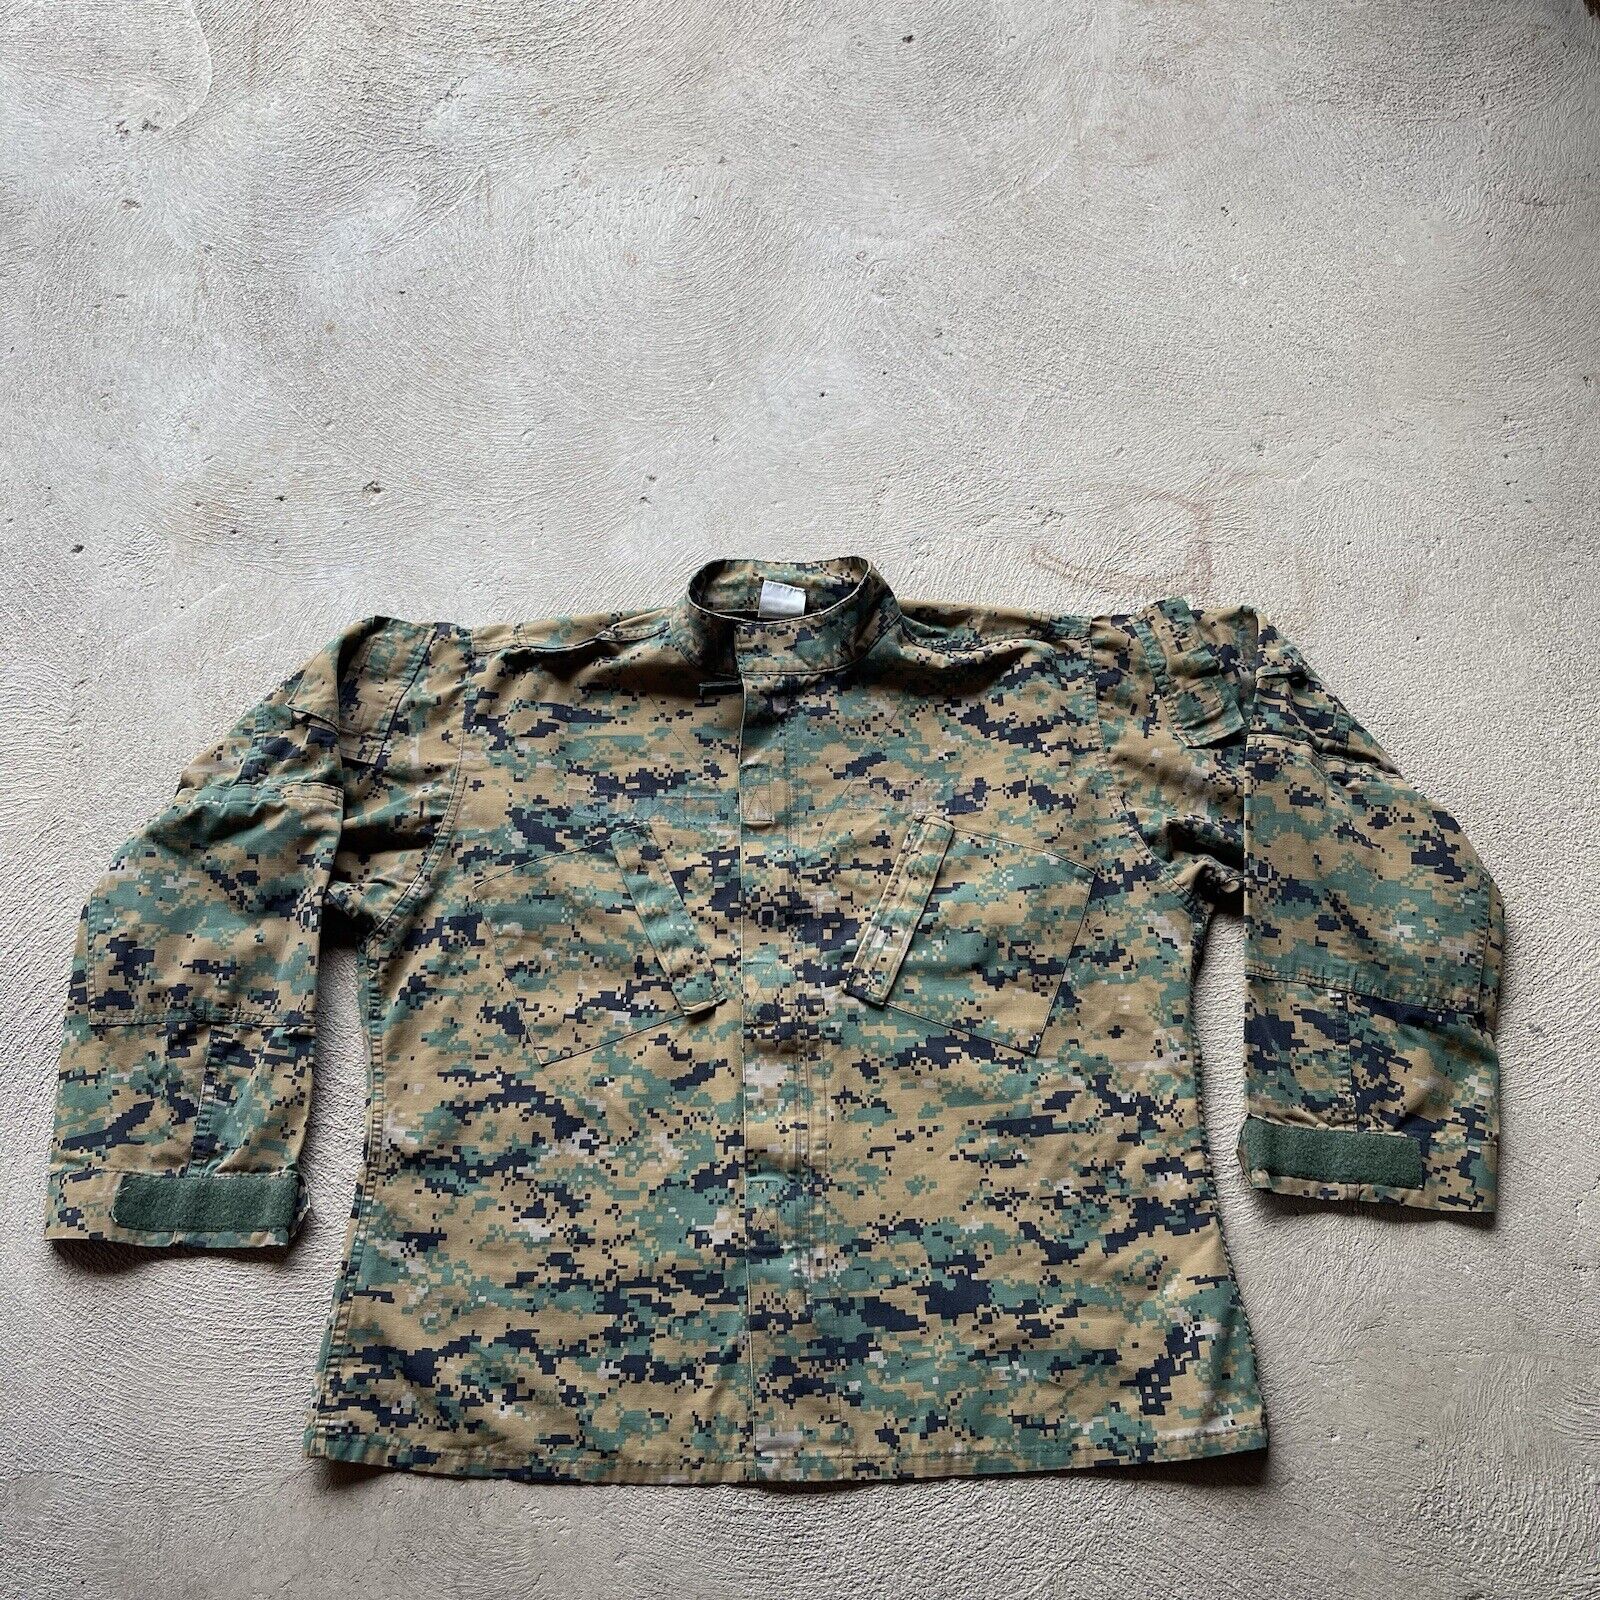 Military Shirt Large Regular Blouse Woodland Marpat Camo MCCUU Combat Tactical